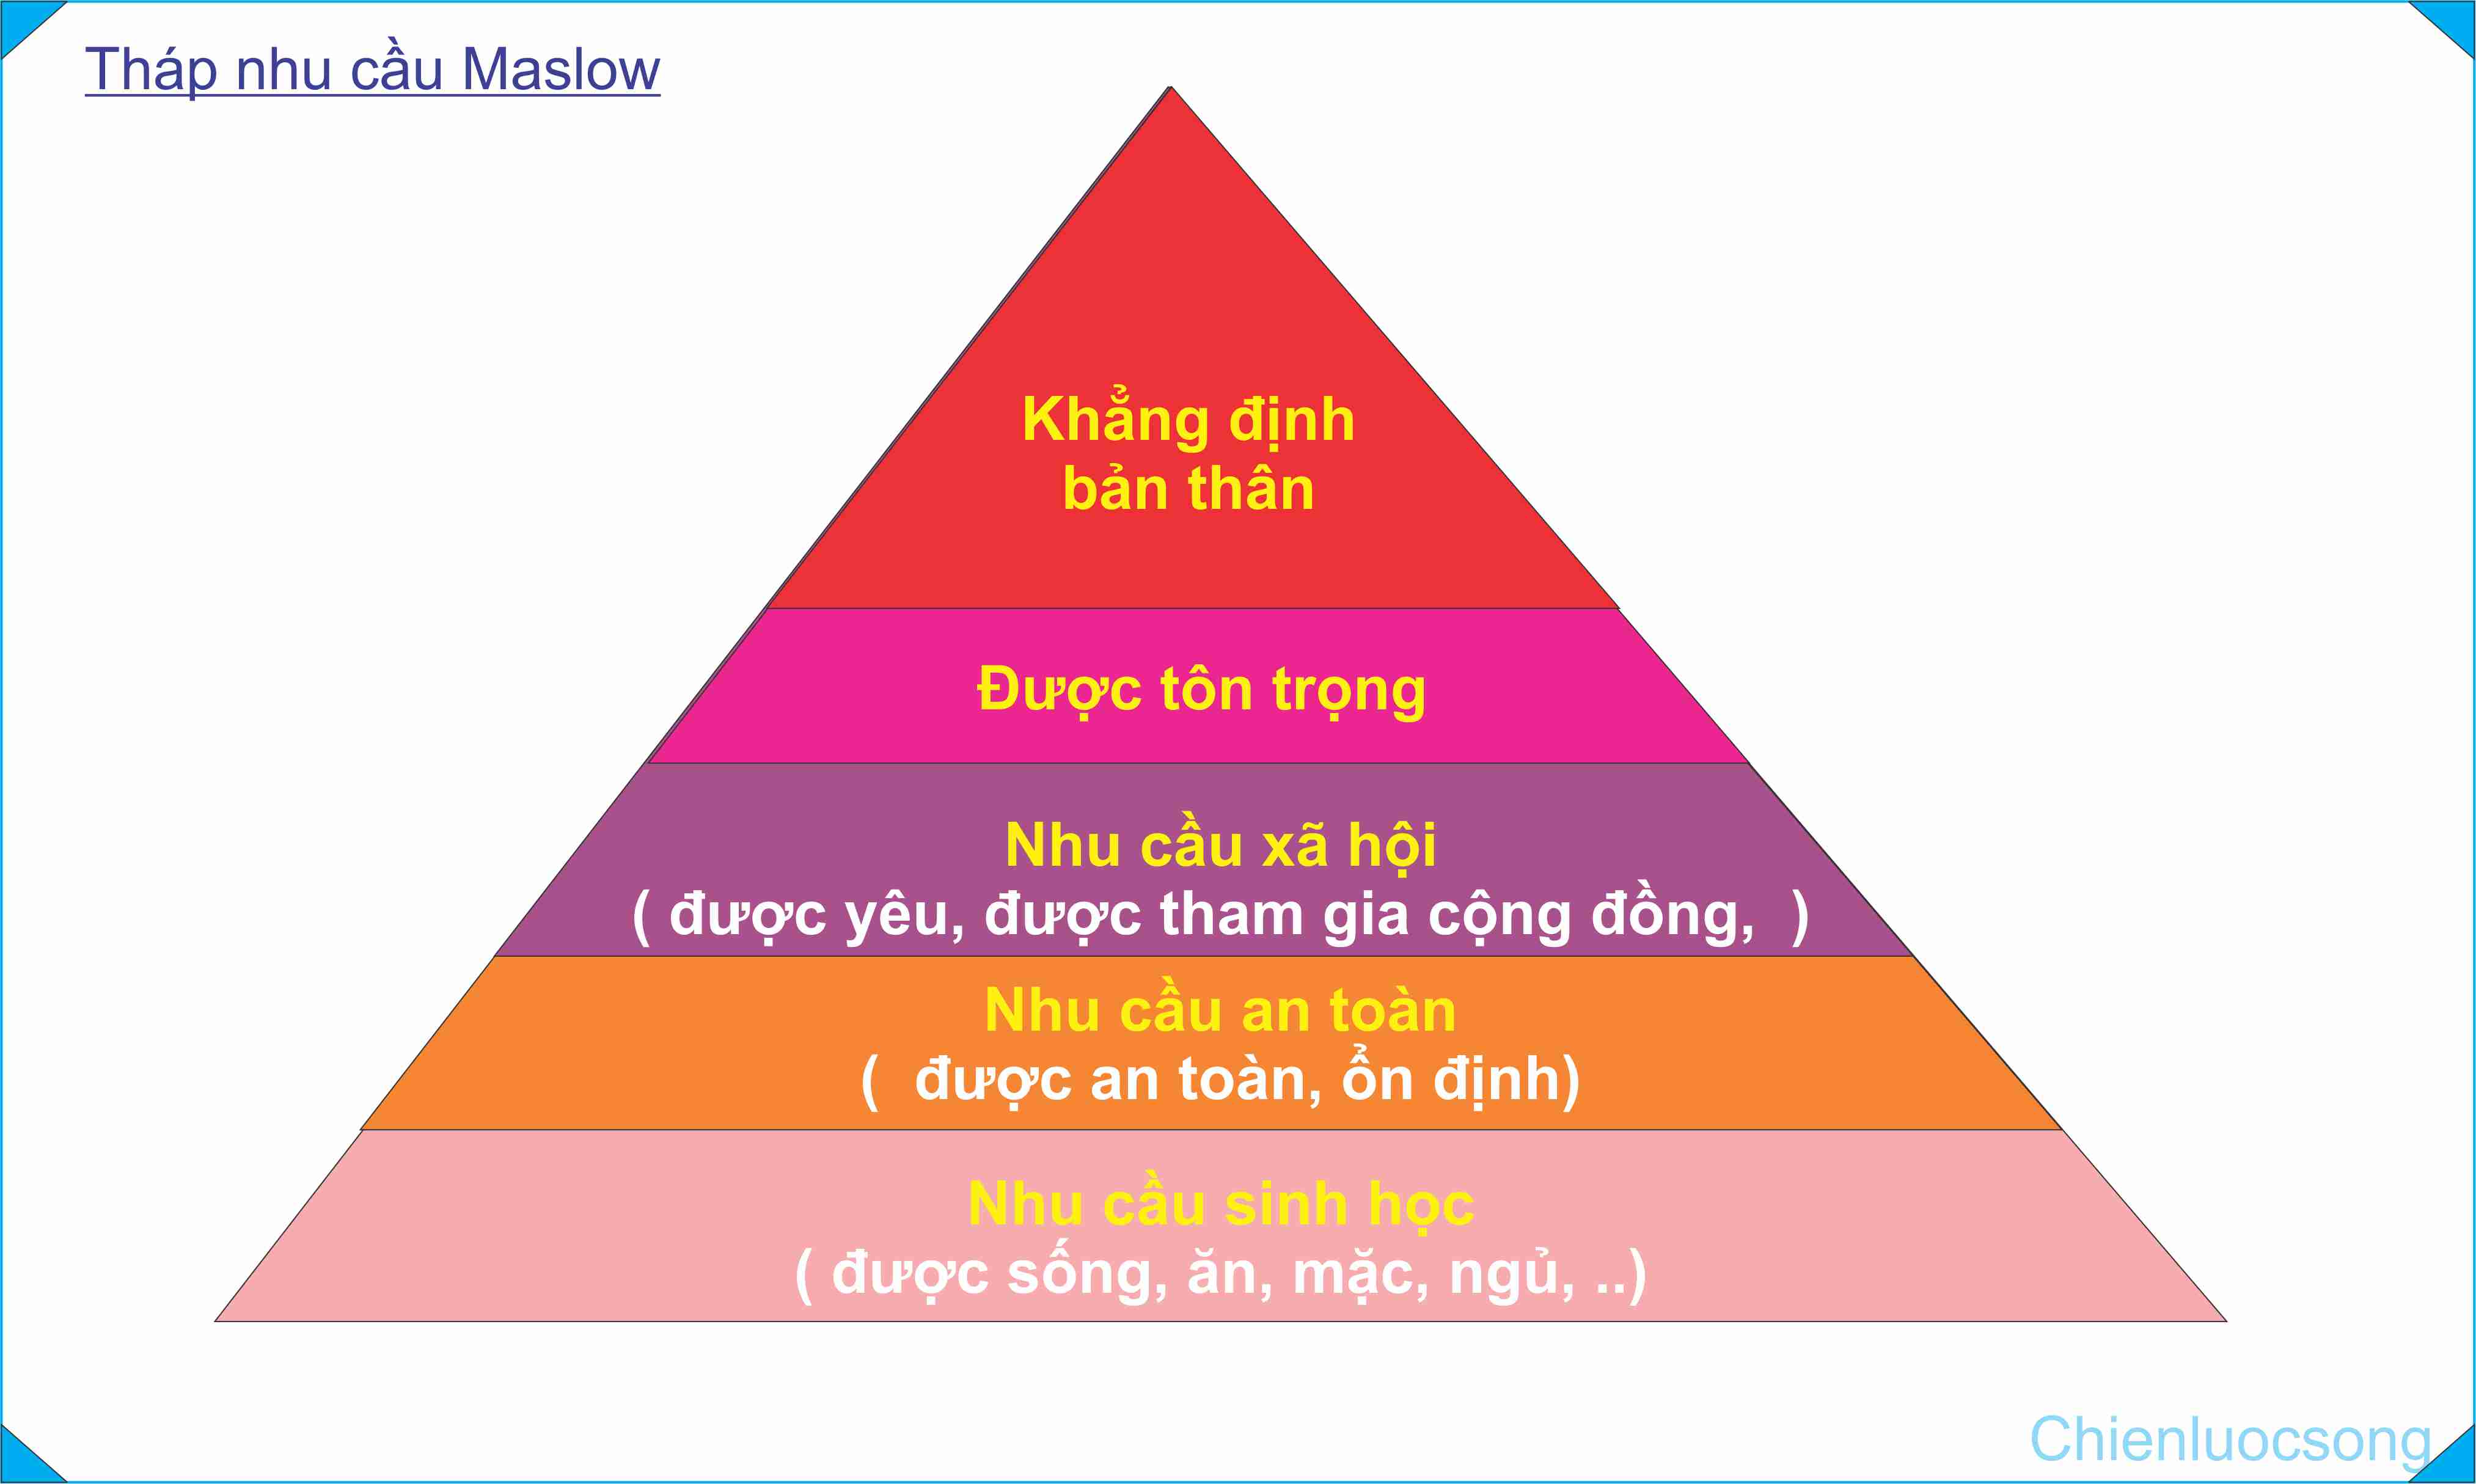 Tháp nhu cầu Maslow và ứng dụng trong quản lý nhân sự  TopDev